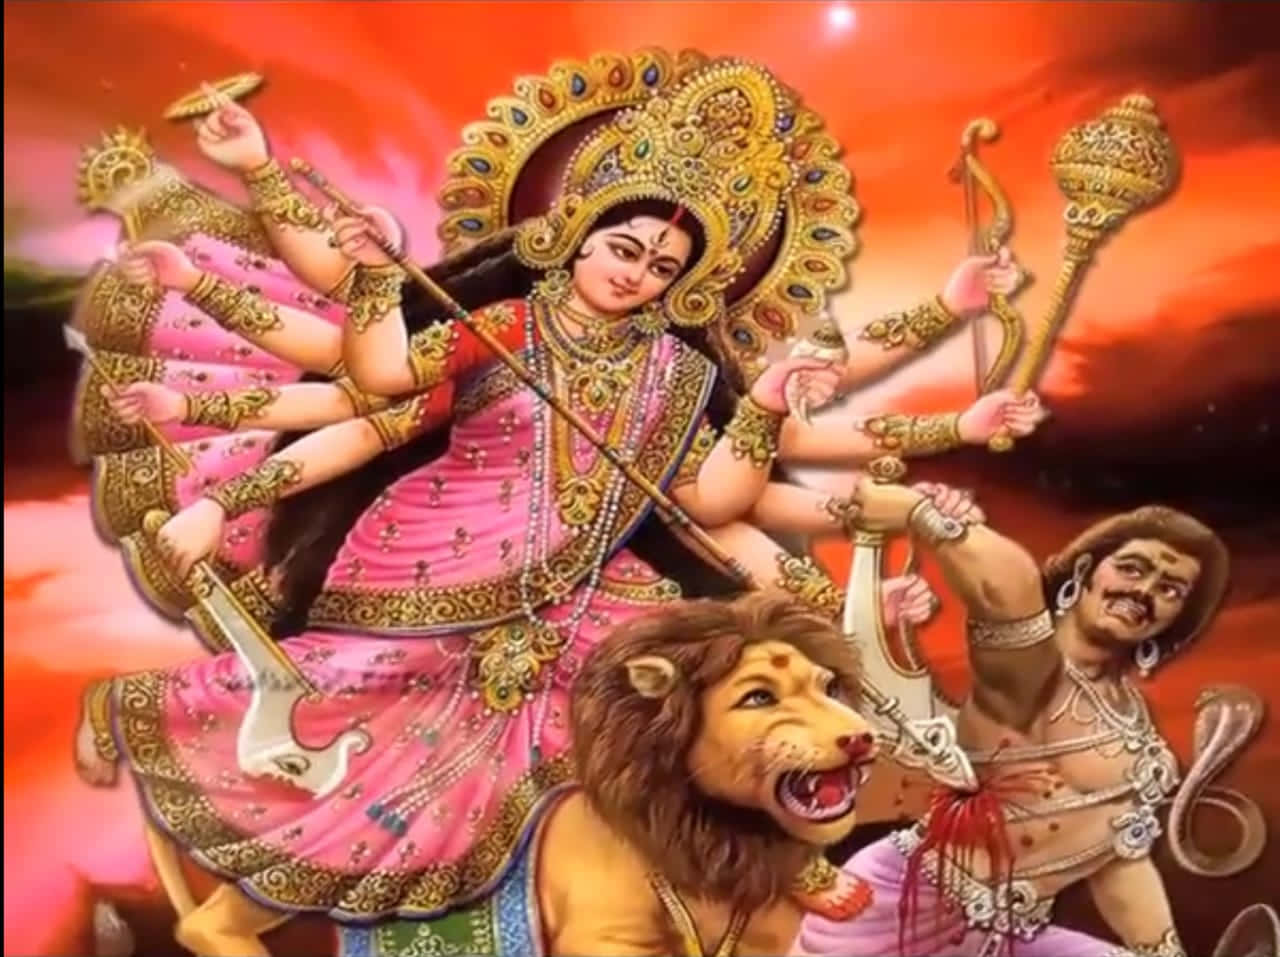 Durga Maa med mandens kunstbillede